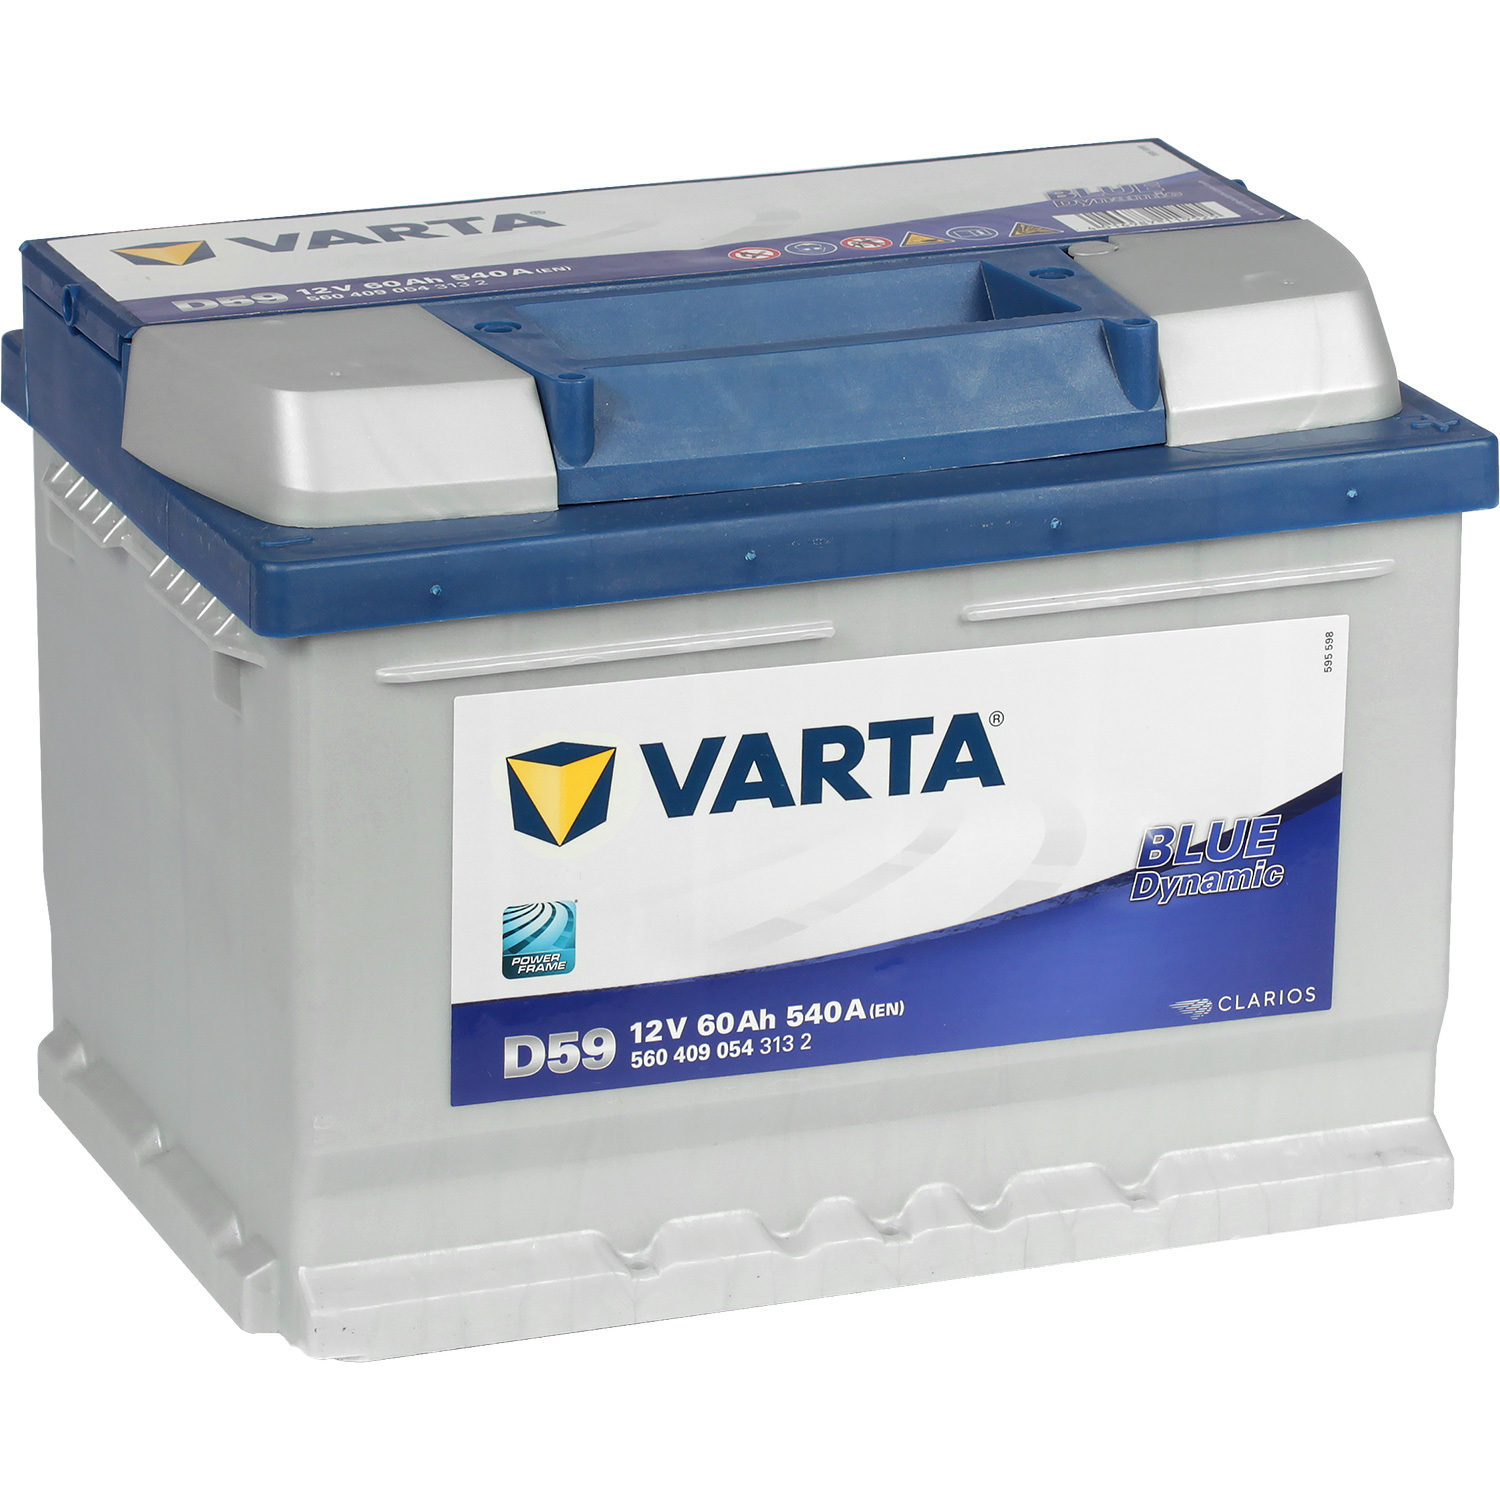 Varta Автомобильный аккумулятор Varta Blue Dynamic D59 60 Ач обратная полярность LB2 varta автомобильный аккумулятор varta silver dynamic i1 110 ач обратная полярность l6